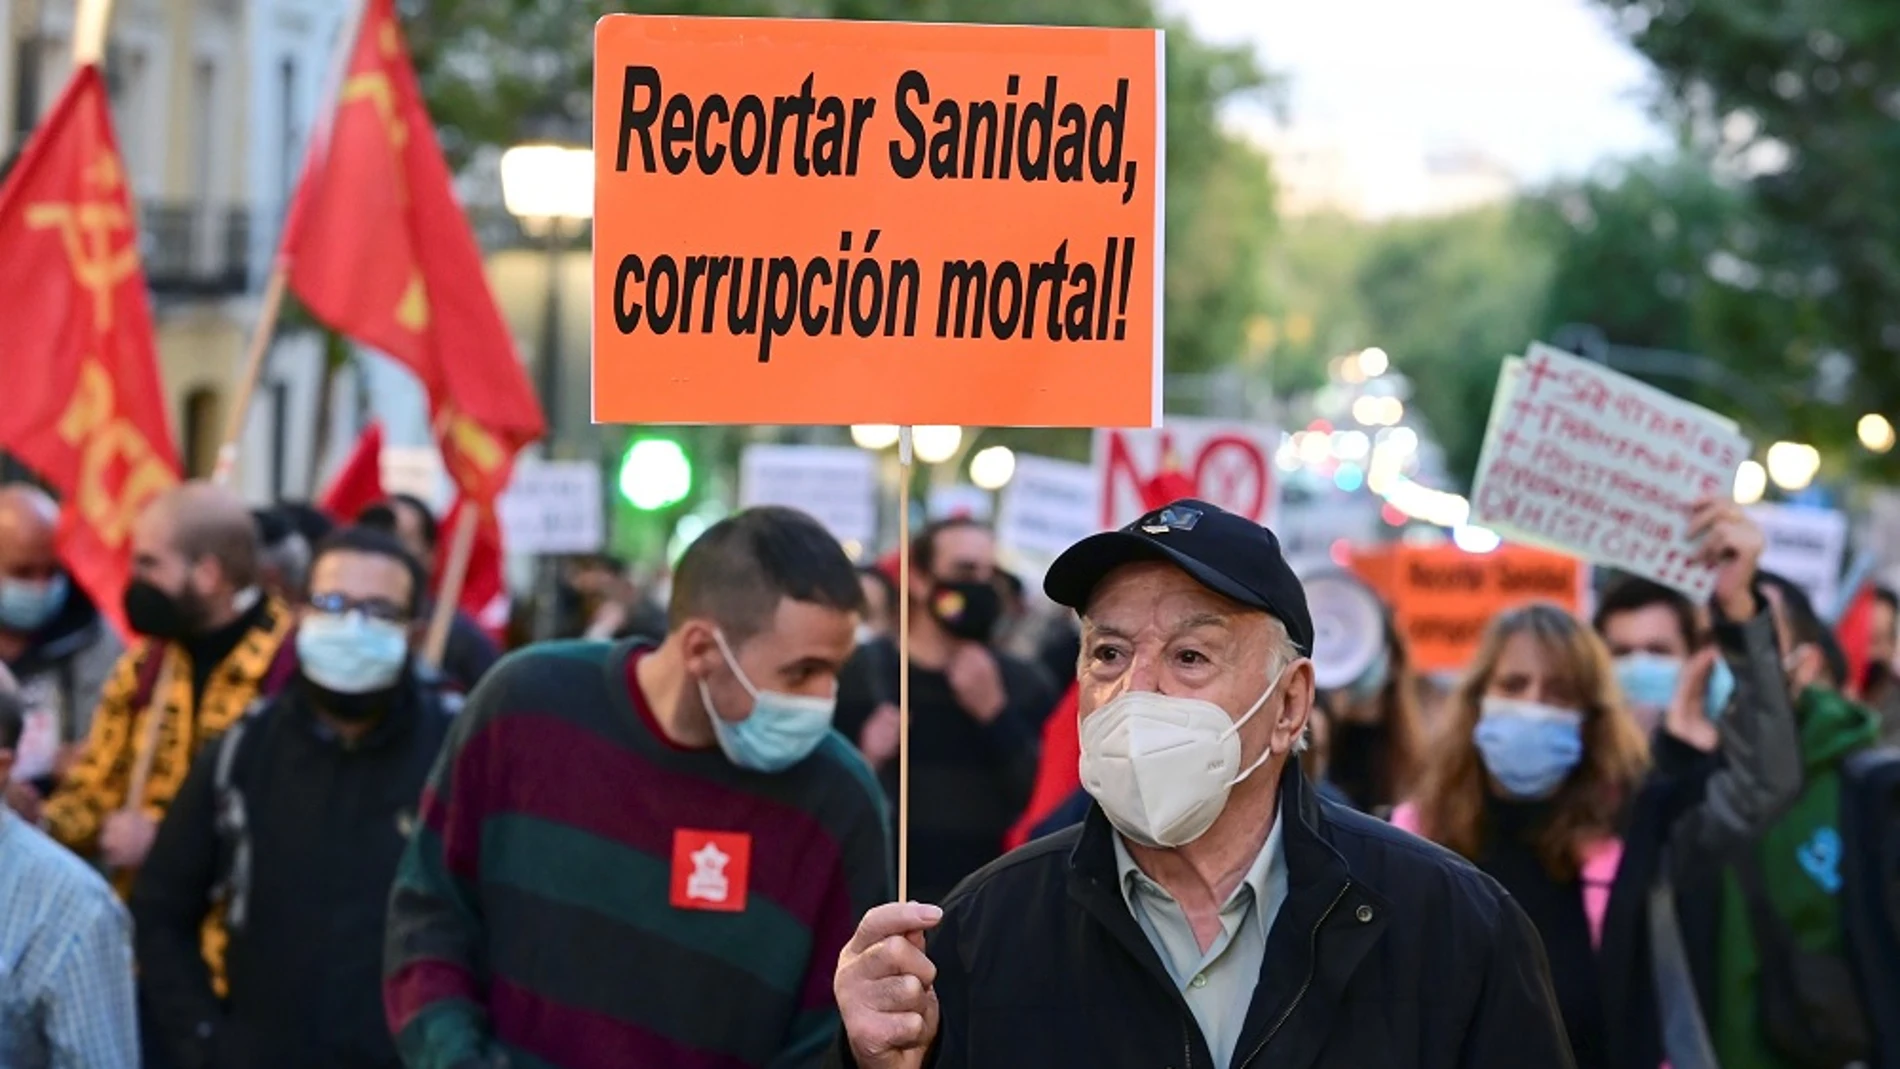 Imagen de un hombre en la manifestación por la sanidad pública en Madrid